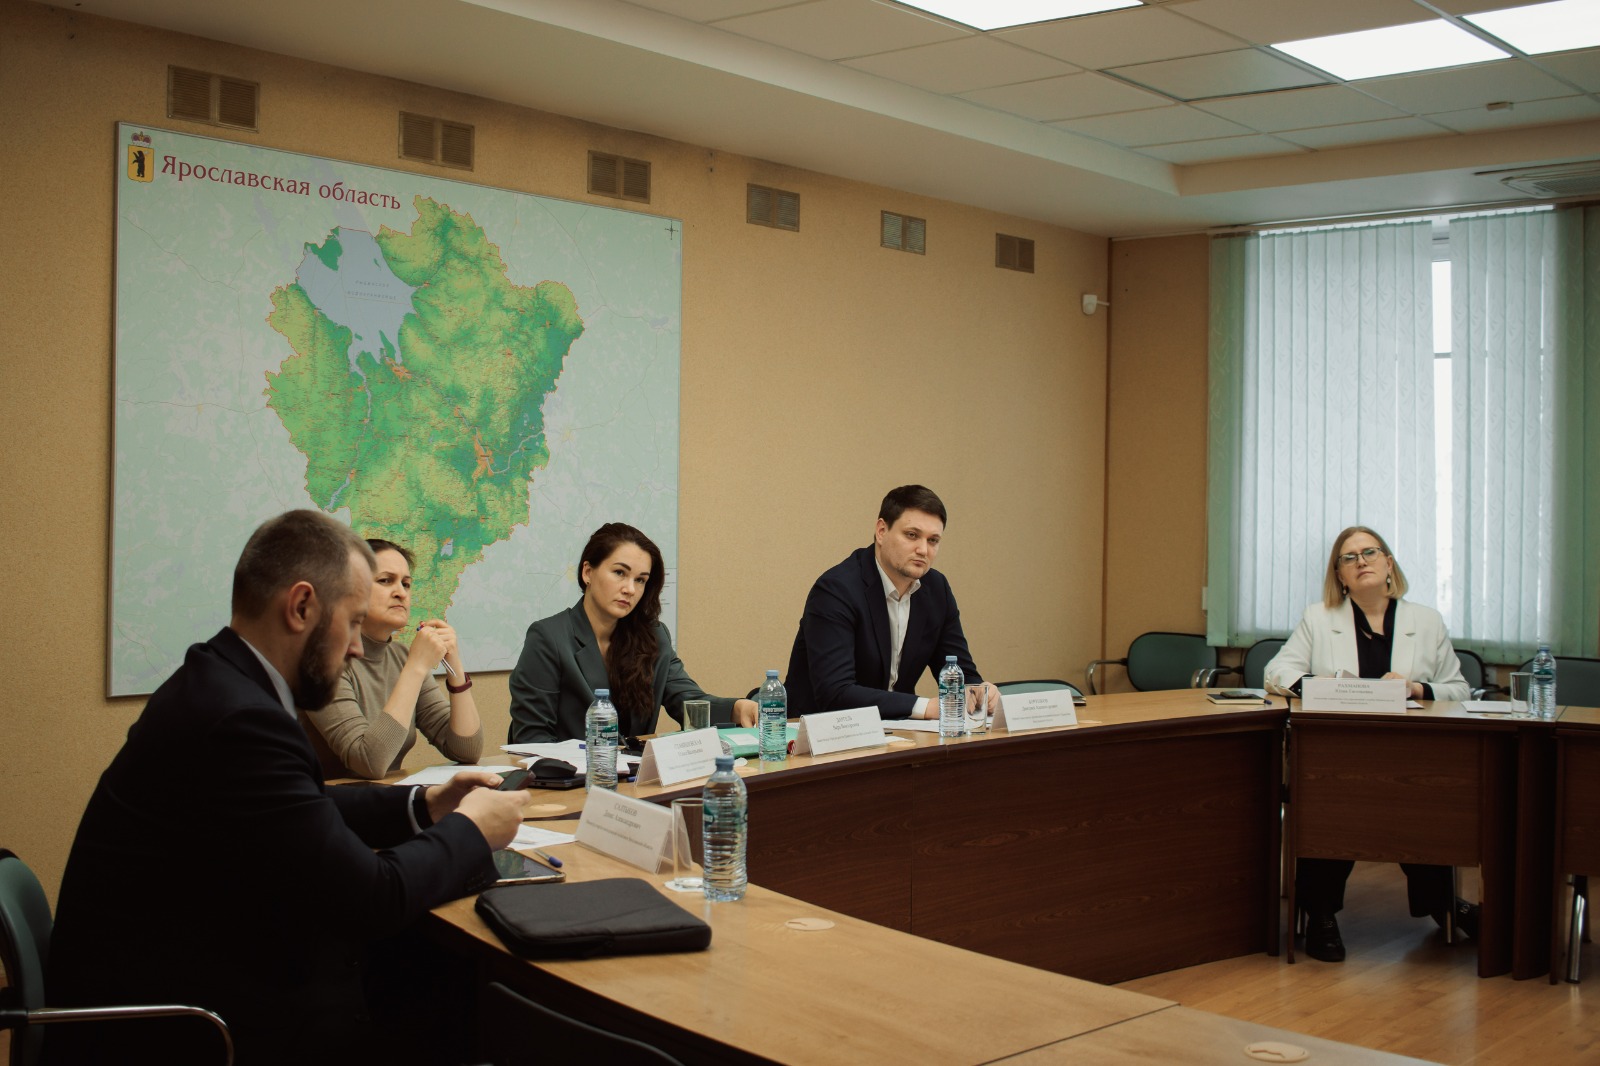 Кандидаты в Молодежное правительство Ярославской области прошли итоговые собеседования